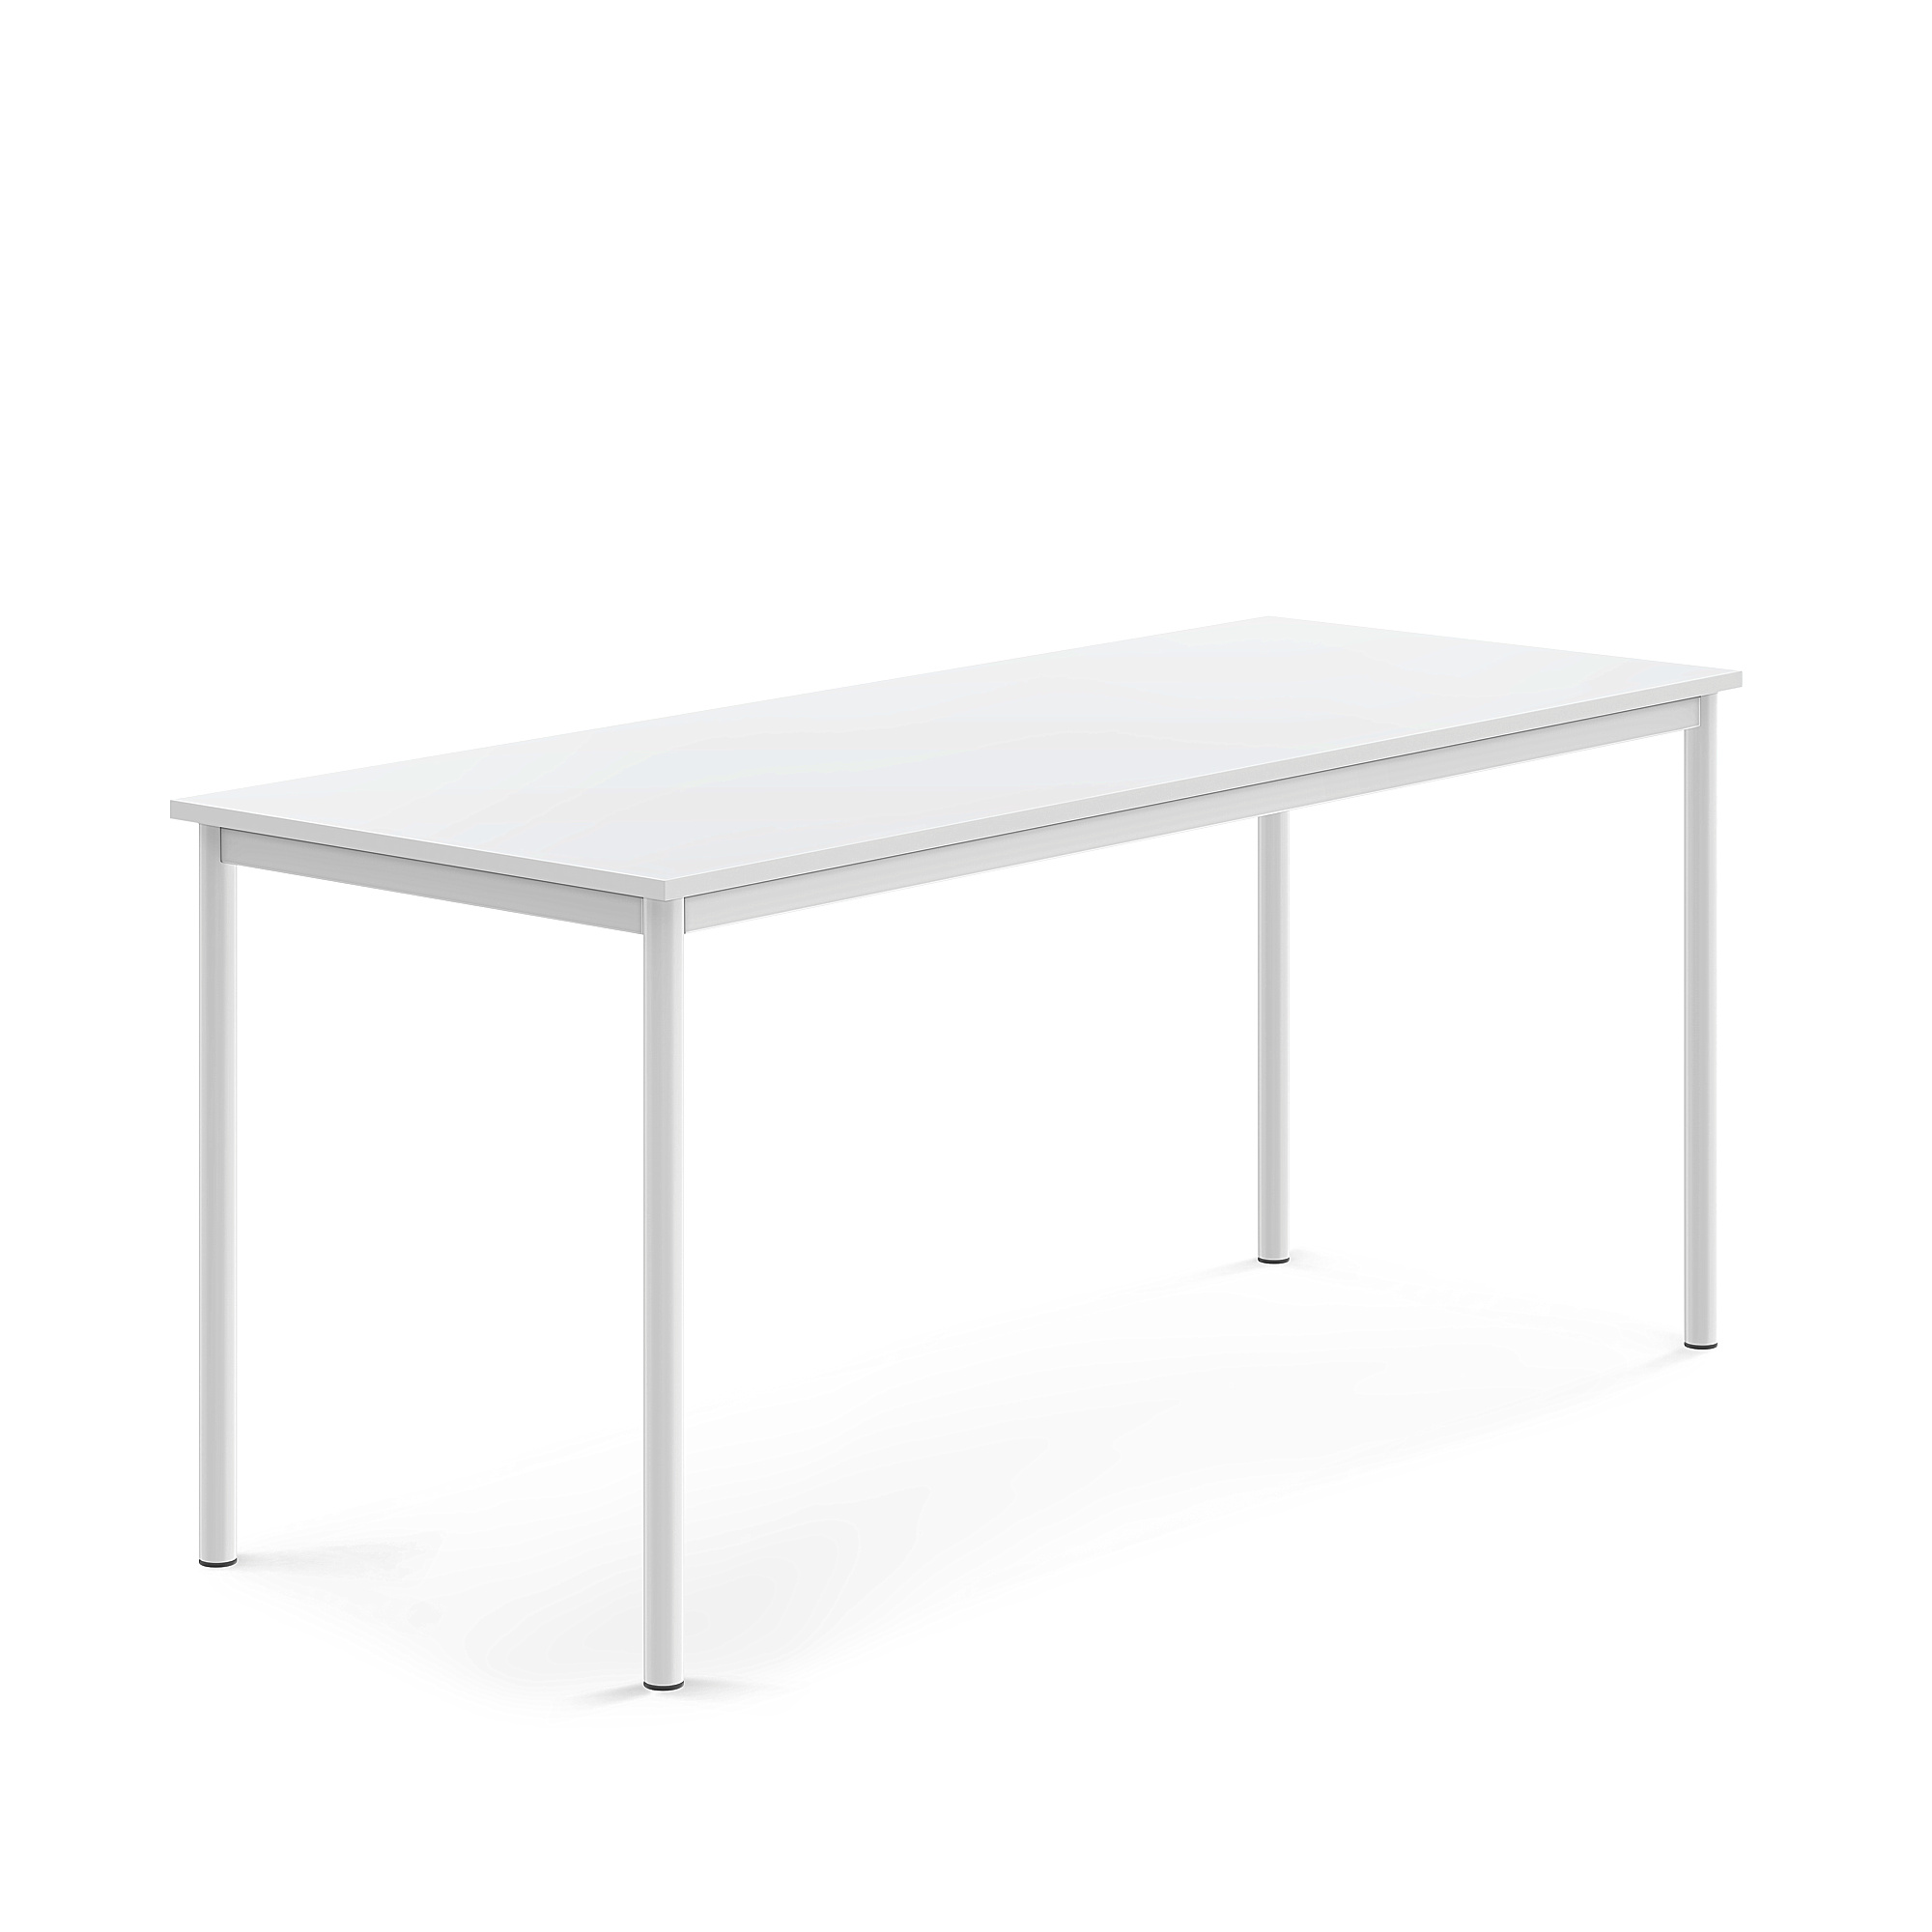 Stůl BORÅS, 1800x700x760 mm, bílé nohy, HPL deska, bílá